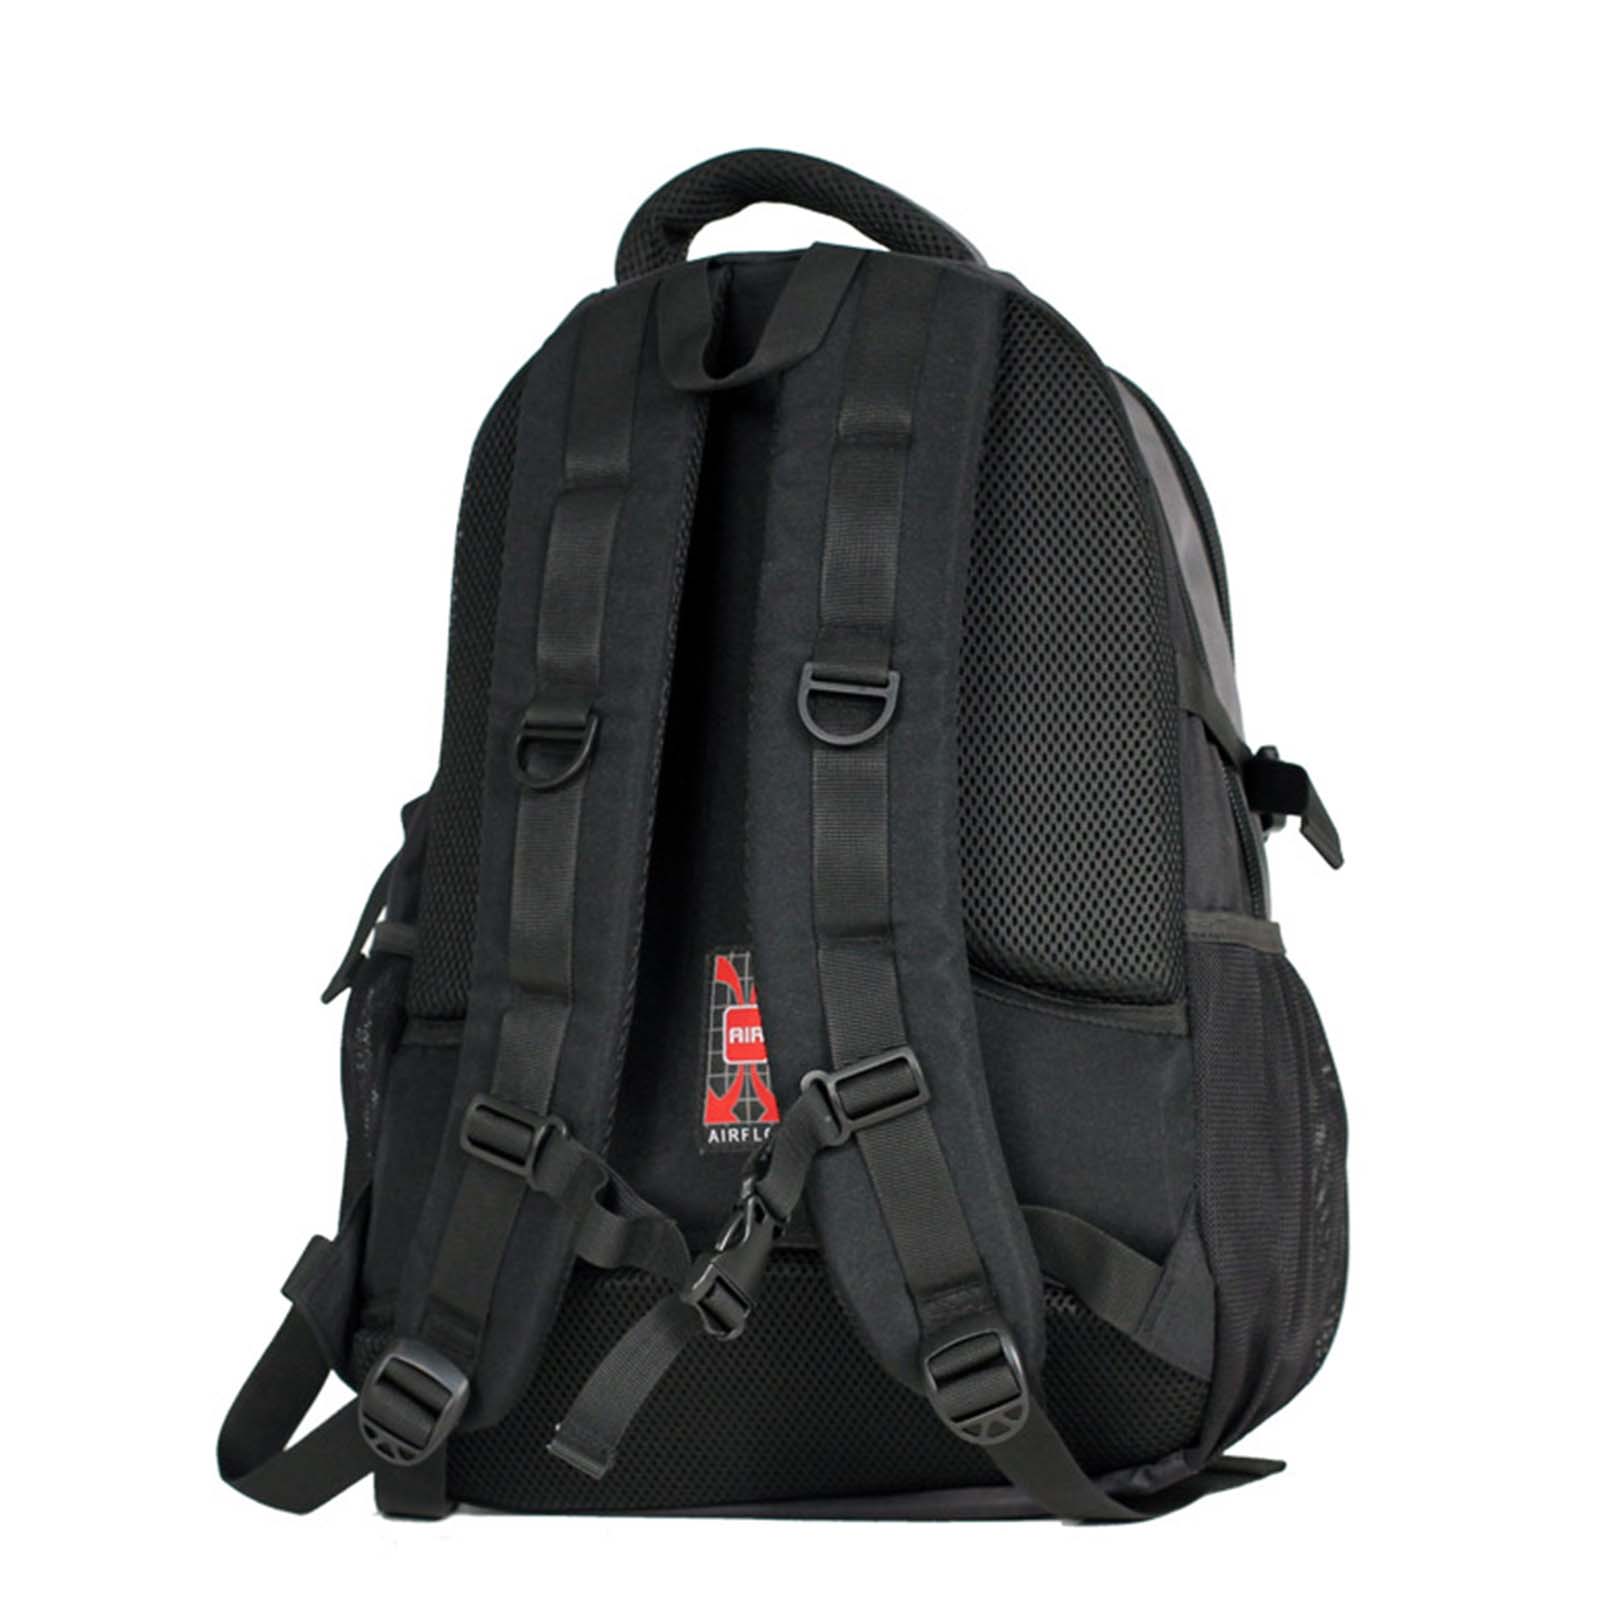 tosca-laptop-backpack-37l-black-grey-back